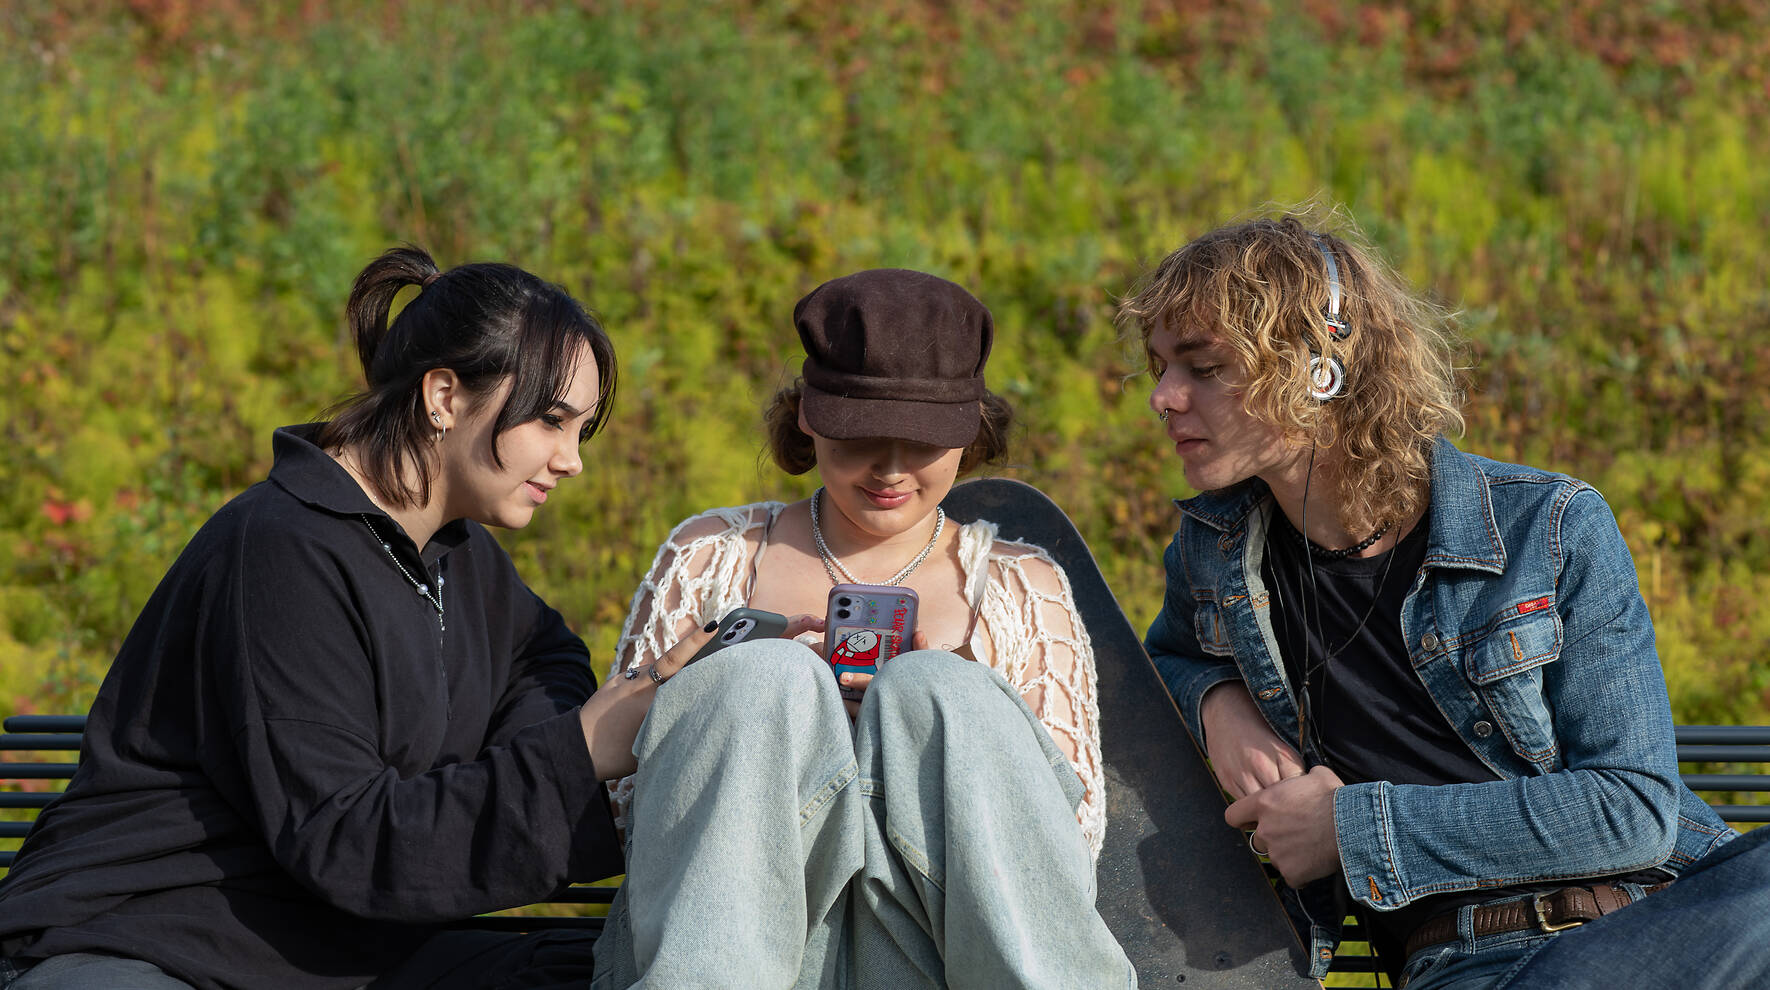 Kolme nuorta istuvat puistonpenkillä ja katsovat älypuhelimien näyttöjä.